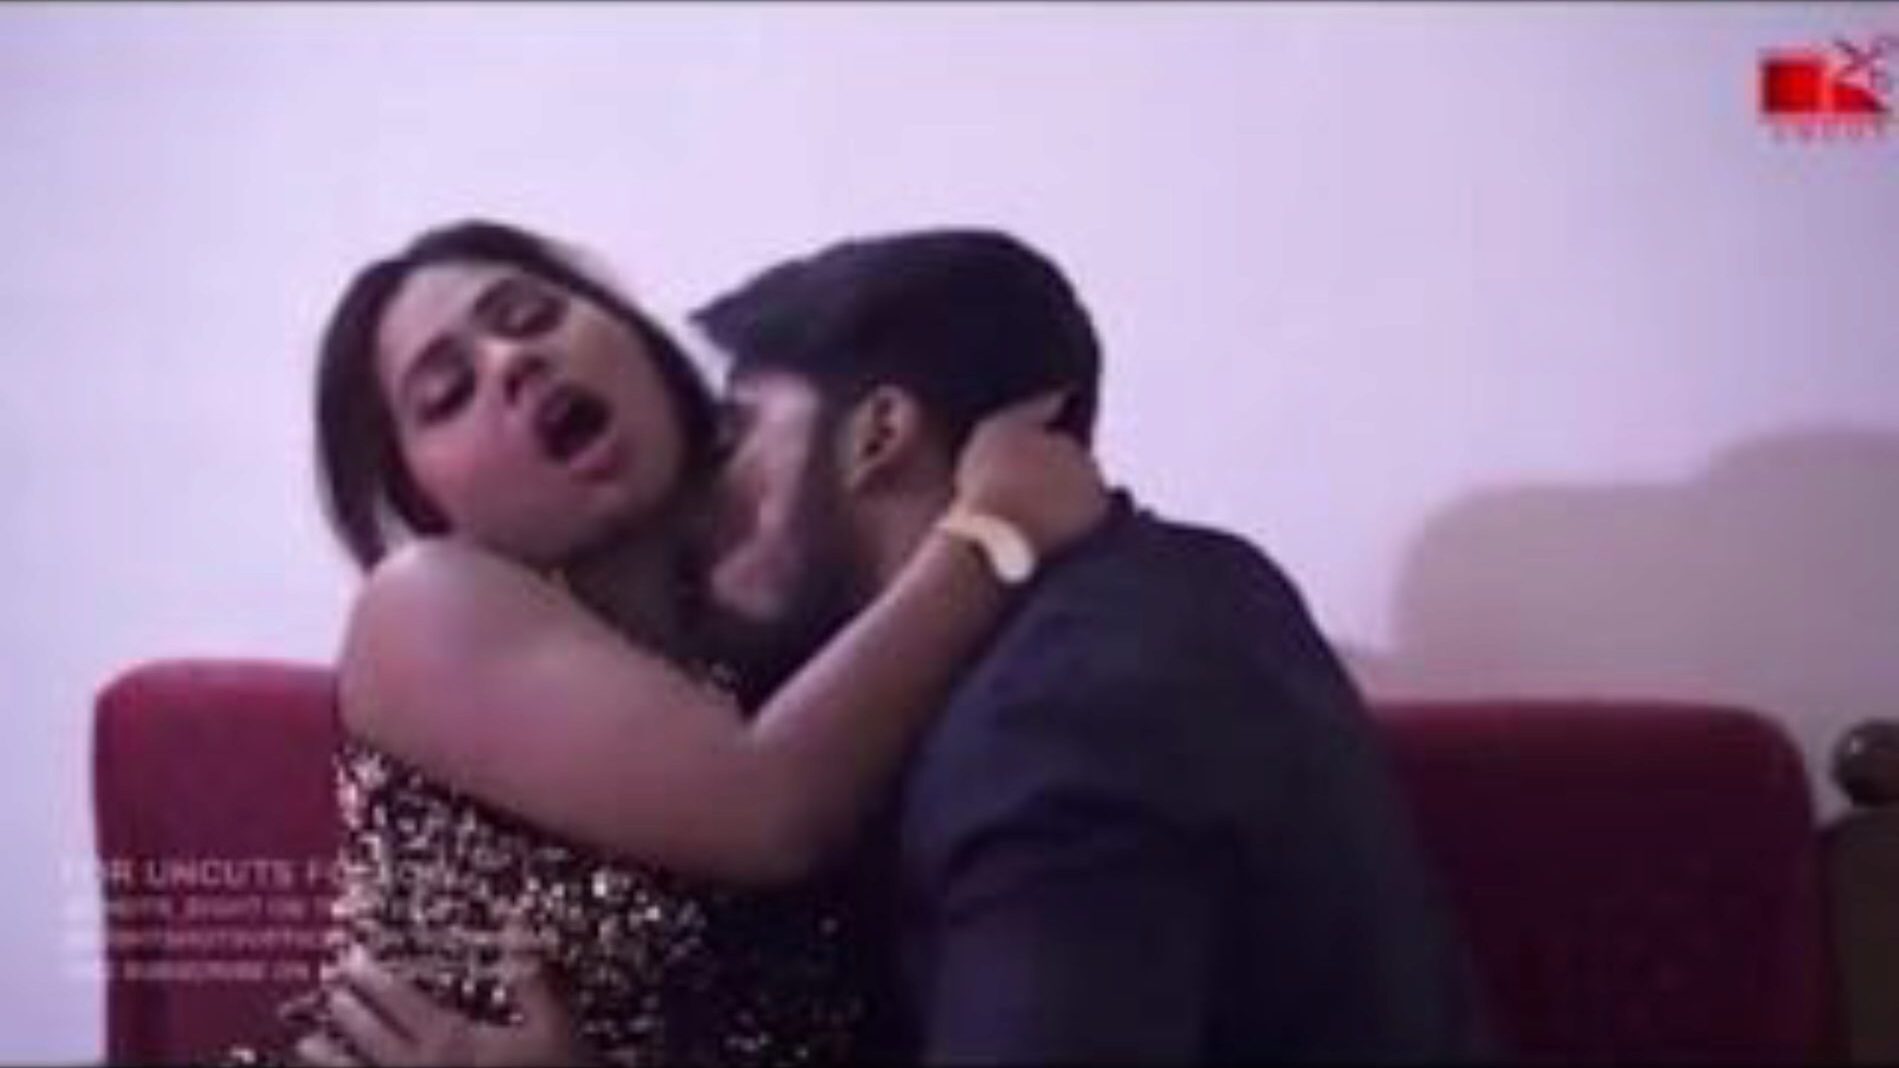 indiase vrouw geneukt voor echtgenoot hindi chudai ... bekijk indiase vrouw geneukt voor echtgenoot hindi chudai film op xhamster - de ultieme schare van gratis aziatische indische xxx gratis pornografie buisvideo's